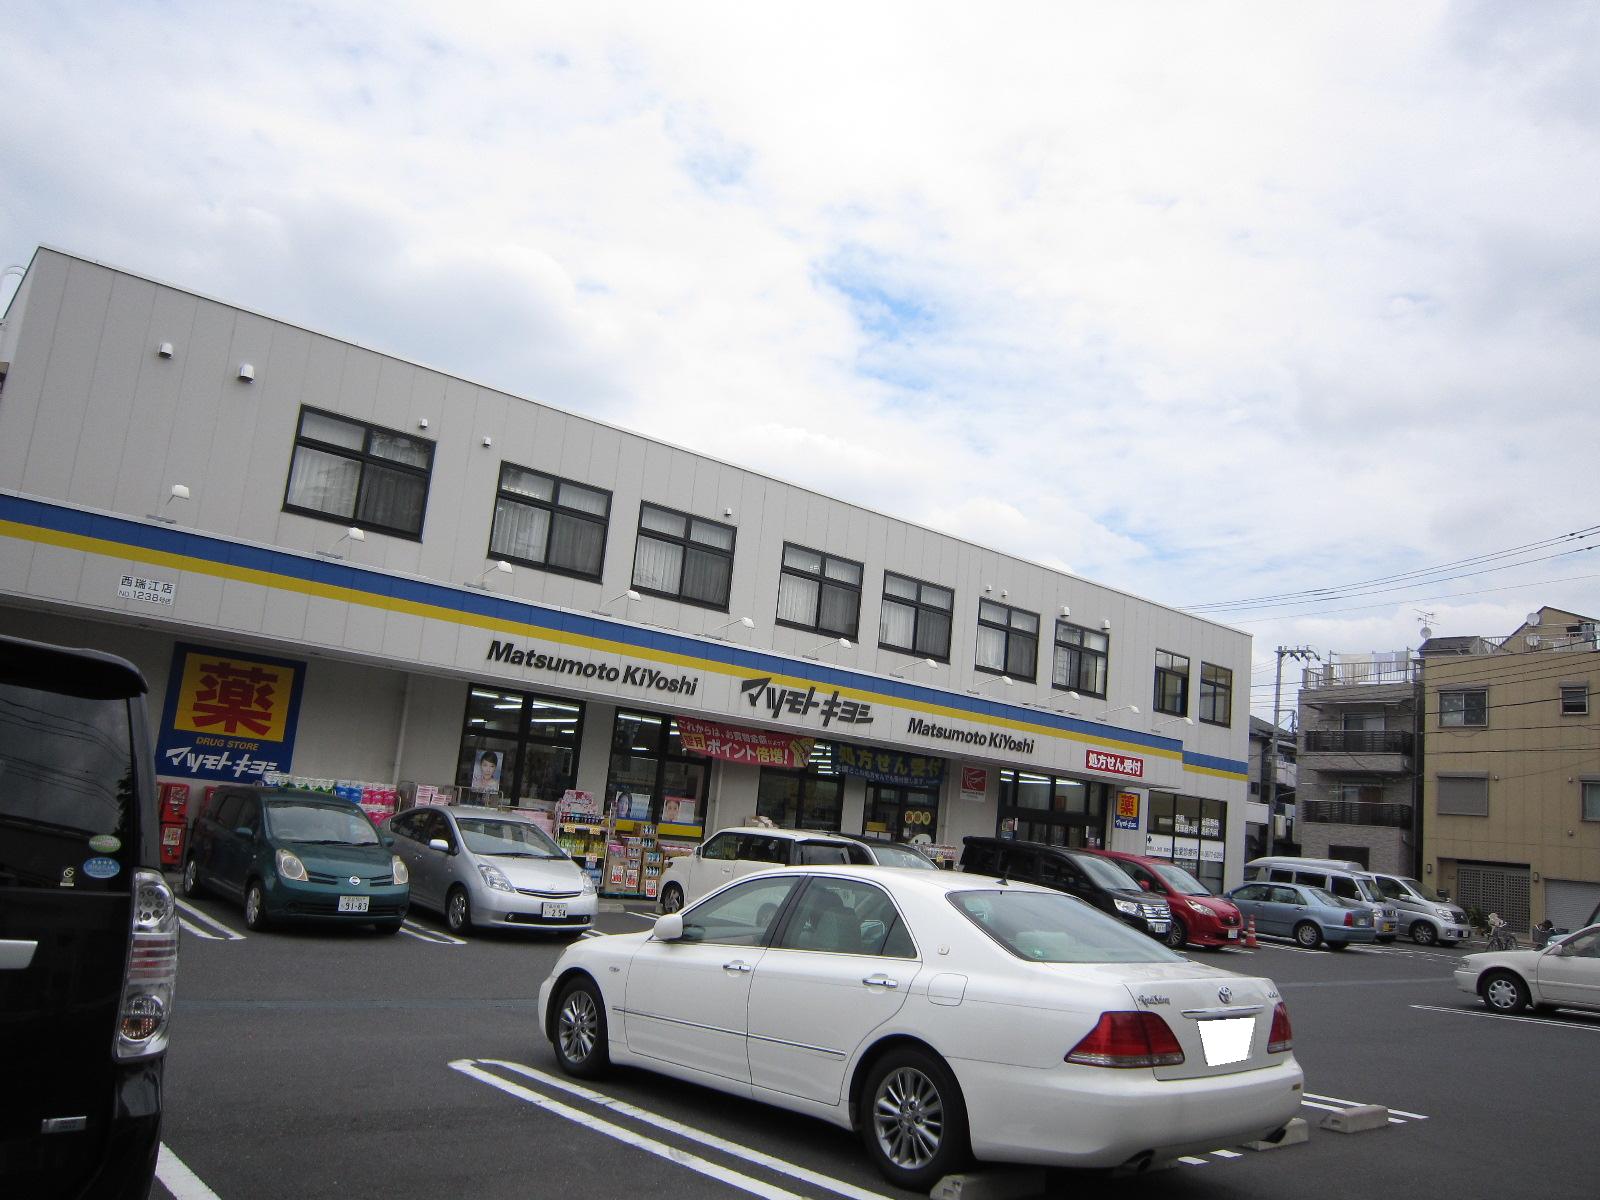 Dorakkusutoa. Matsumotokiyoshi Nishimizue shop 893m until (drugstore)